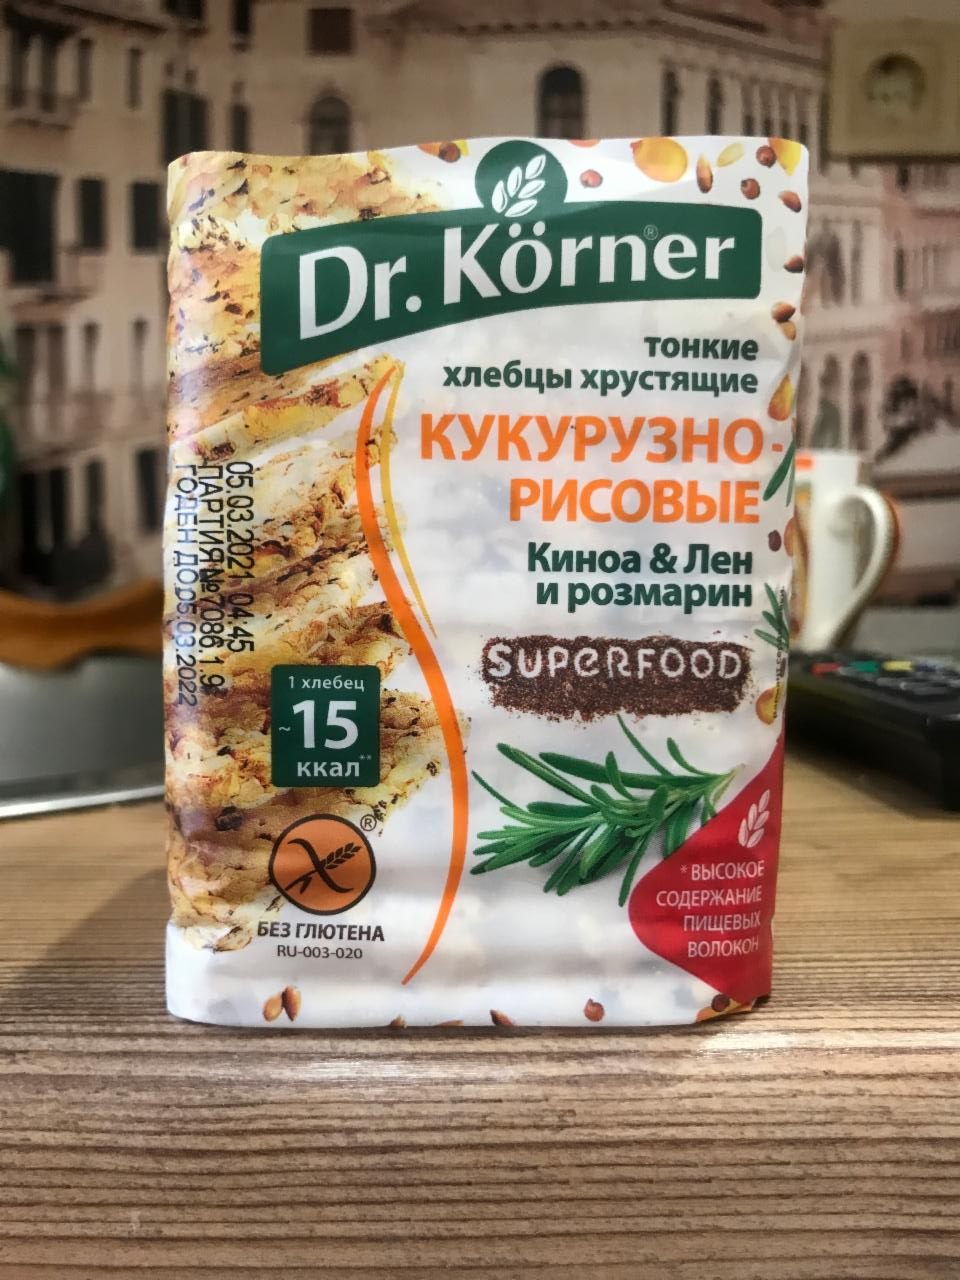 Фото - Хлебцы хрустящие кукурузно-рисовые с киноа льном и розмарином Dr.Korner